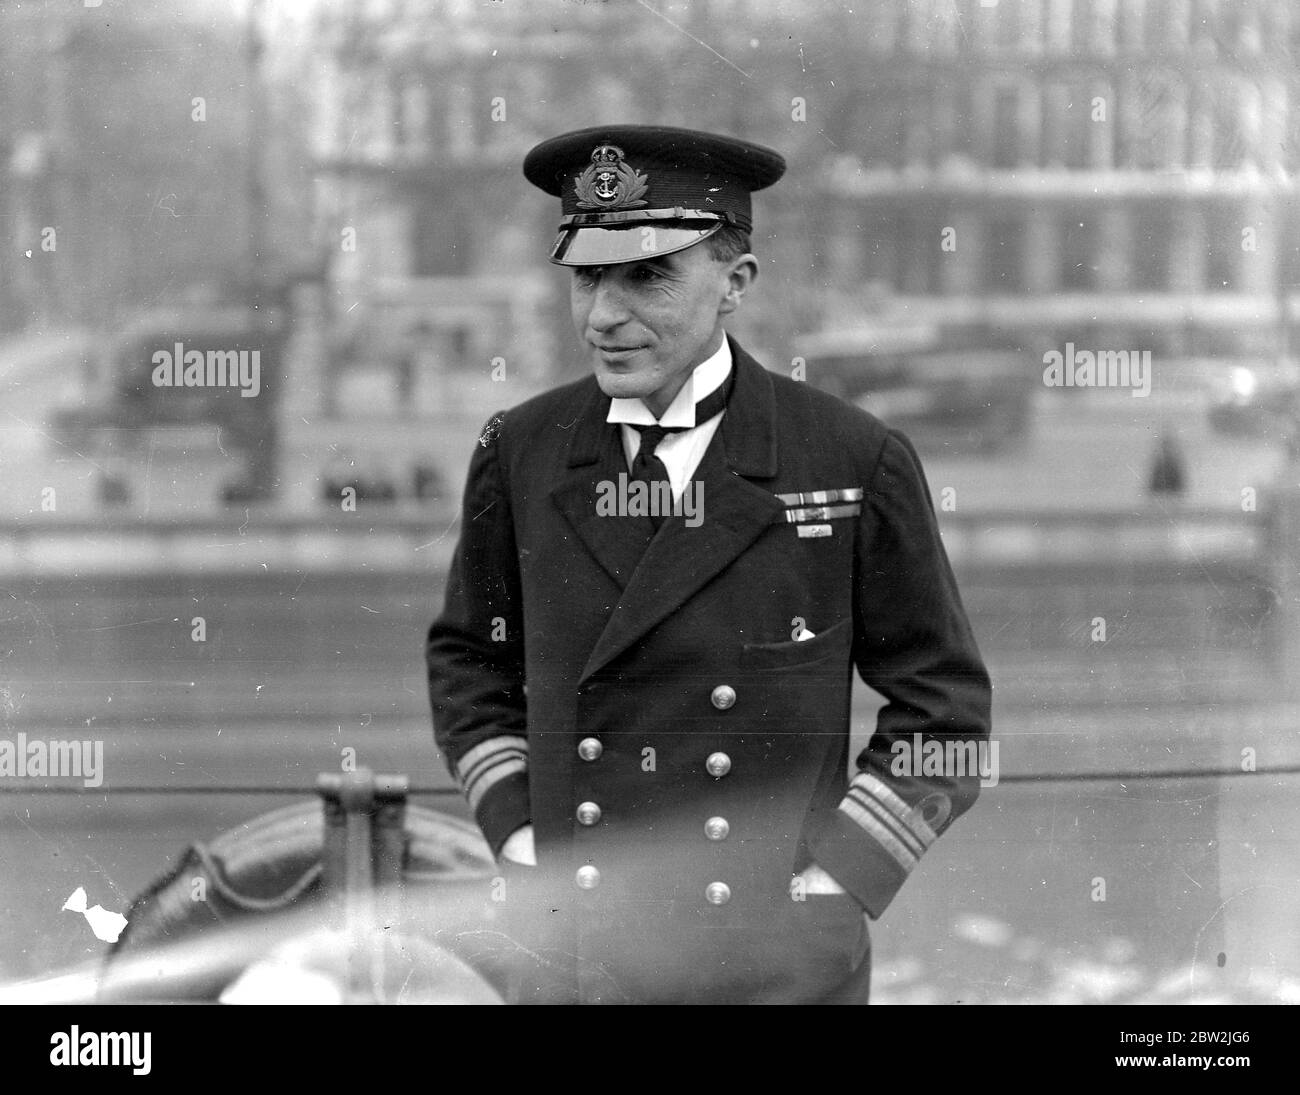 Lieut Commander Michell, M.V.O. D.S.O. R.N. von H.M.S. Präsident, der maßgeblich an der Rettung einer Frau von der Themse, London, beteiligt war. 18. November 1926 Stockfoto